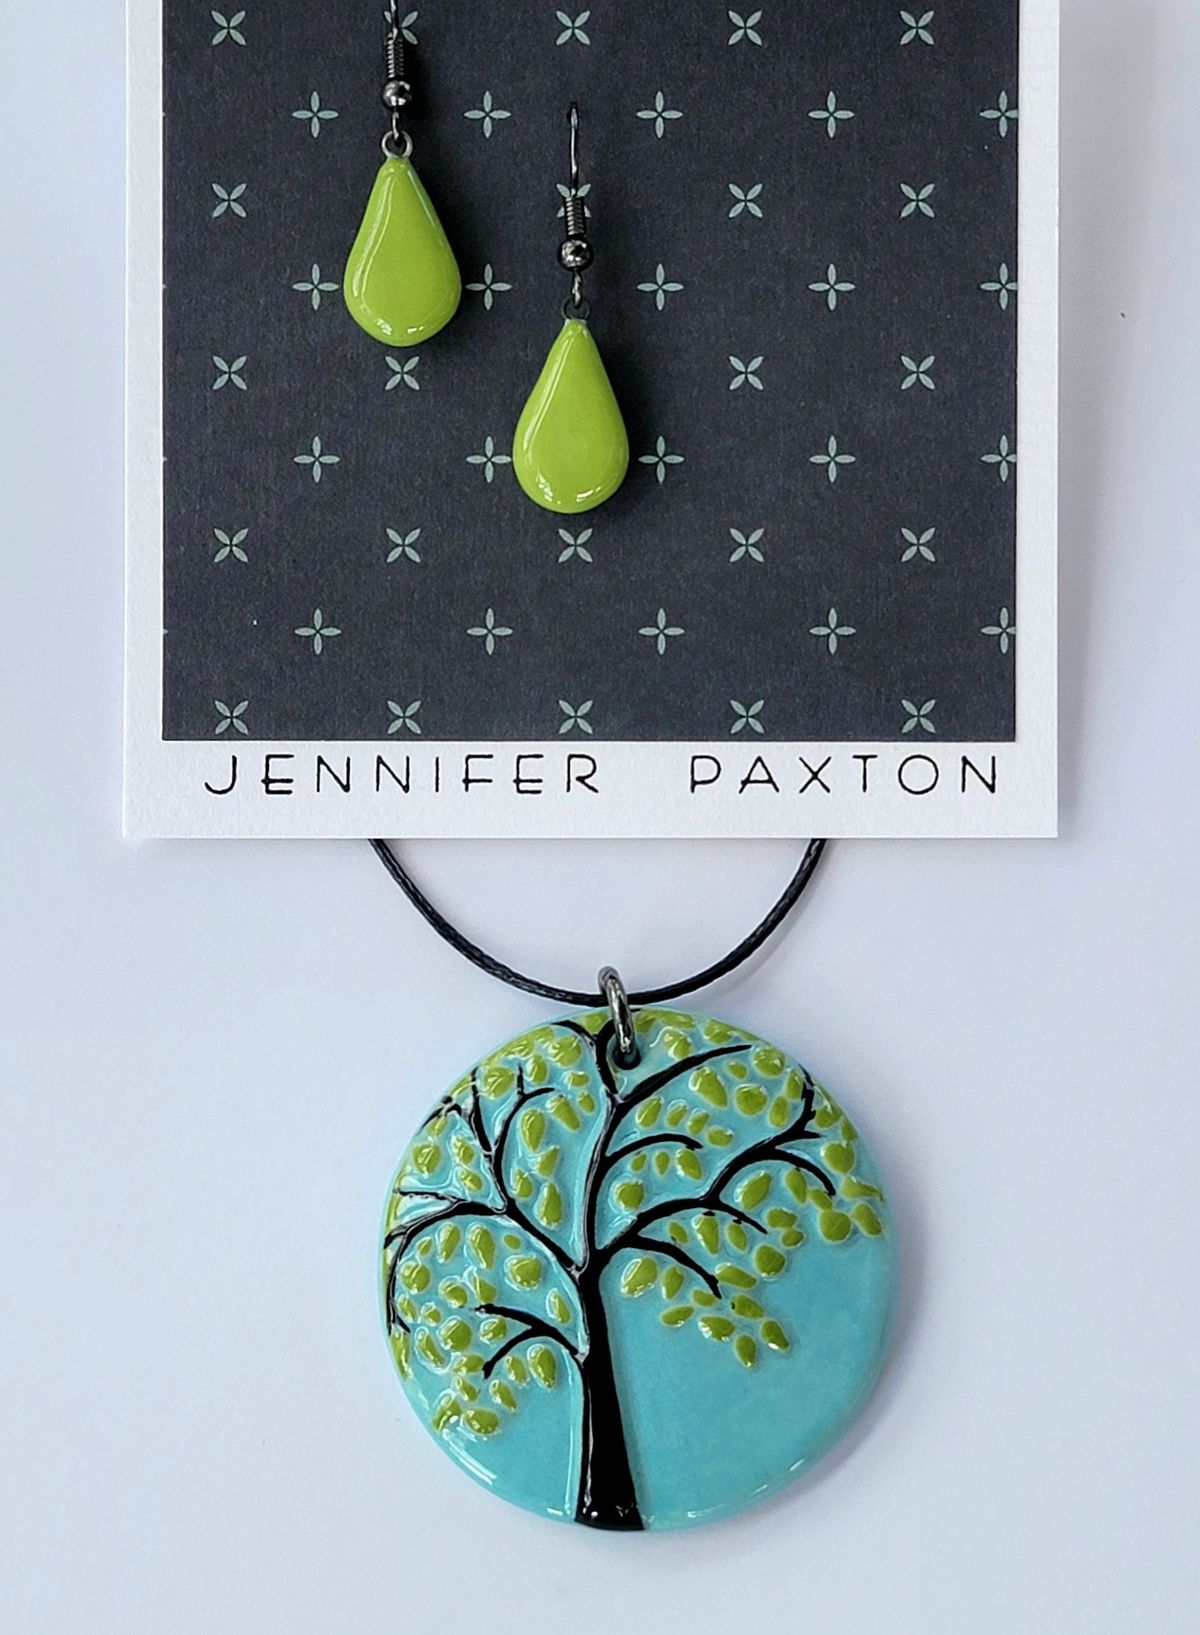 Meet the Artist - Jennifer Paxton